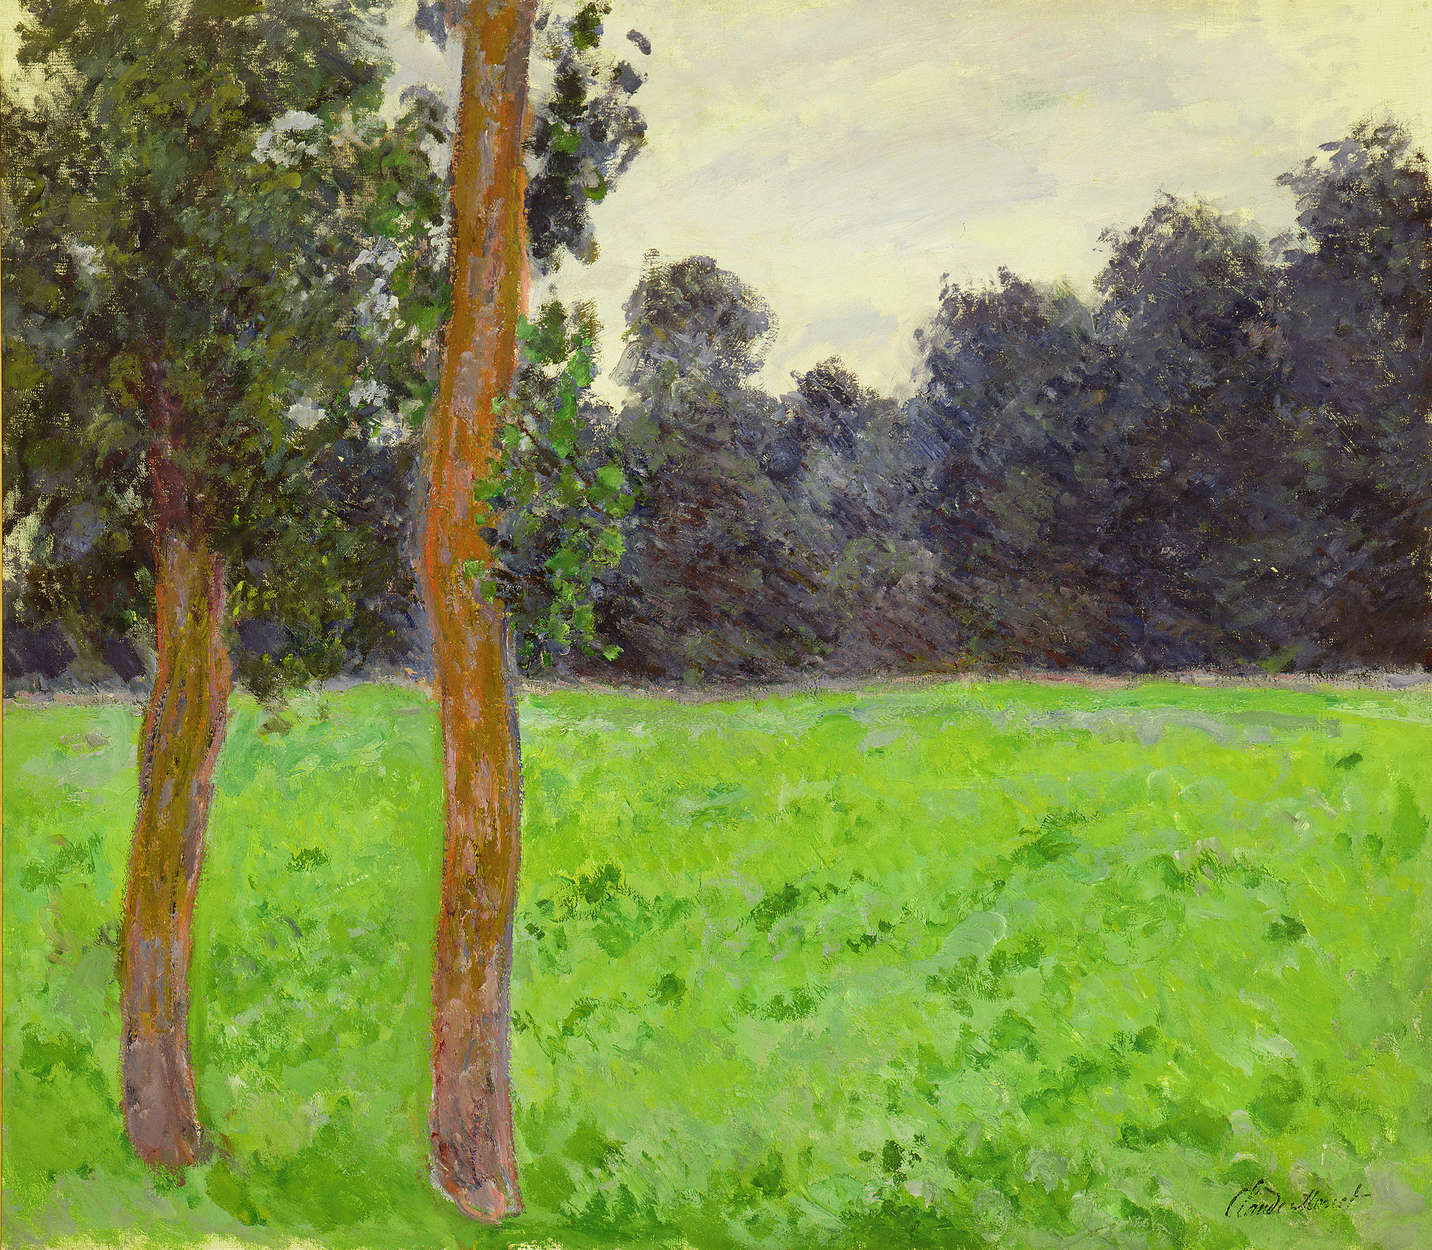             Fotomurali "Due alberi in un prato" di Claude Monet
        